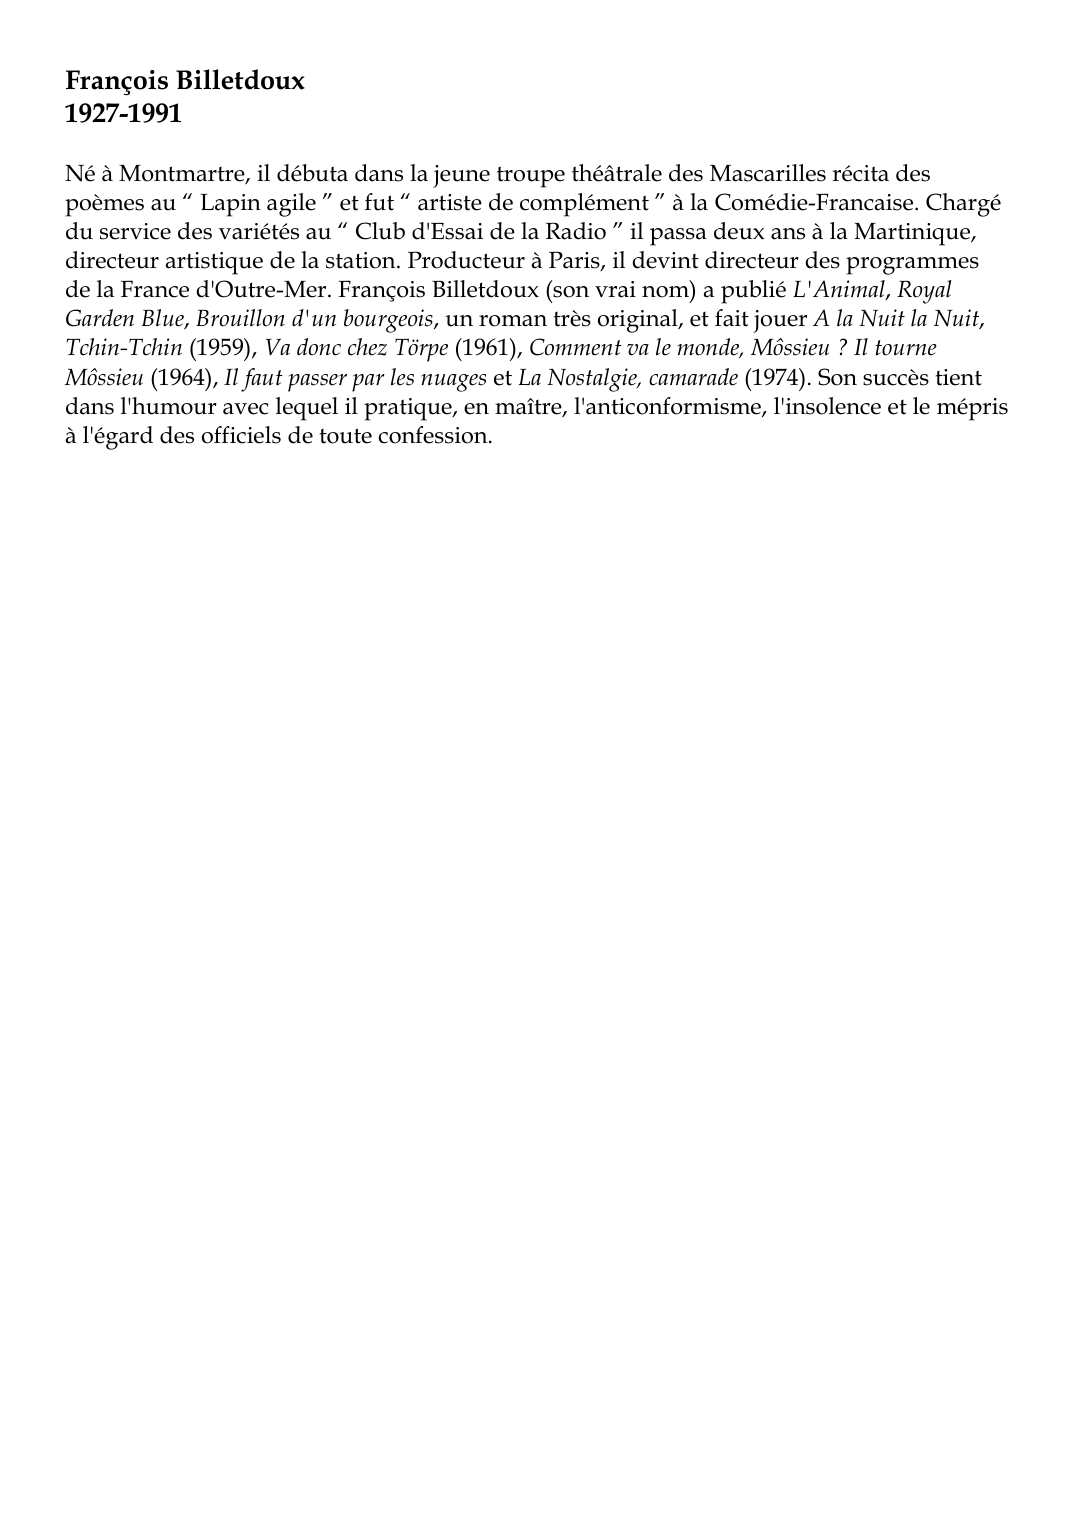 Prévisualisation du document François Billetdoux1927-1991Né à Montmartre, il débuta dans la jeune troupe théâtrale des Mascarilles récita despoèmes au " Lapin agile " et fut " artiste de complément " à la Comédie-Francaise.